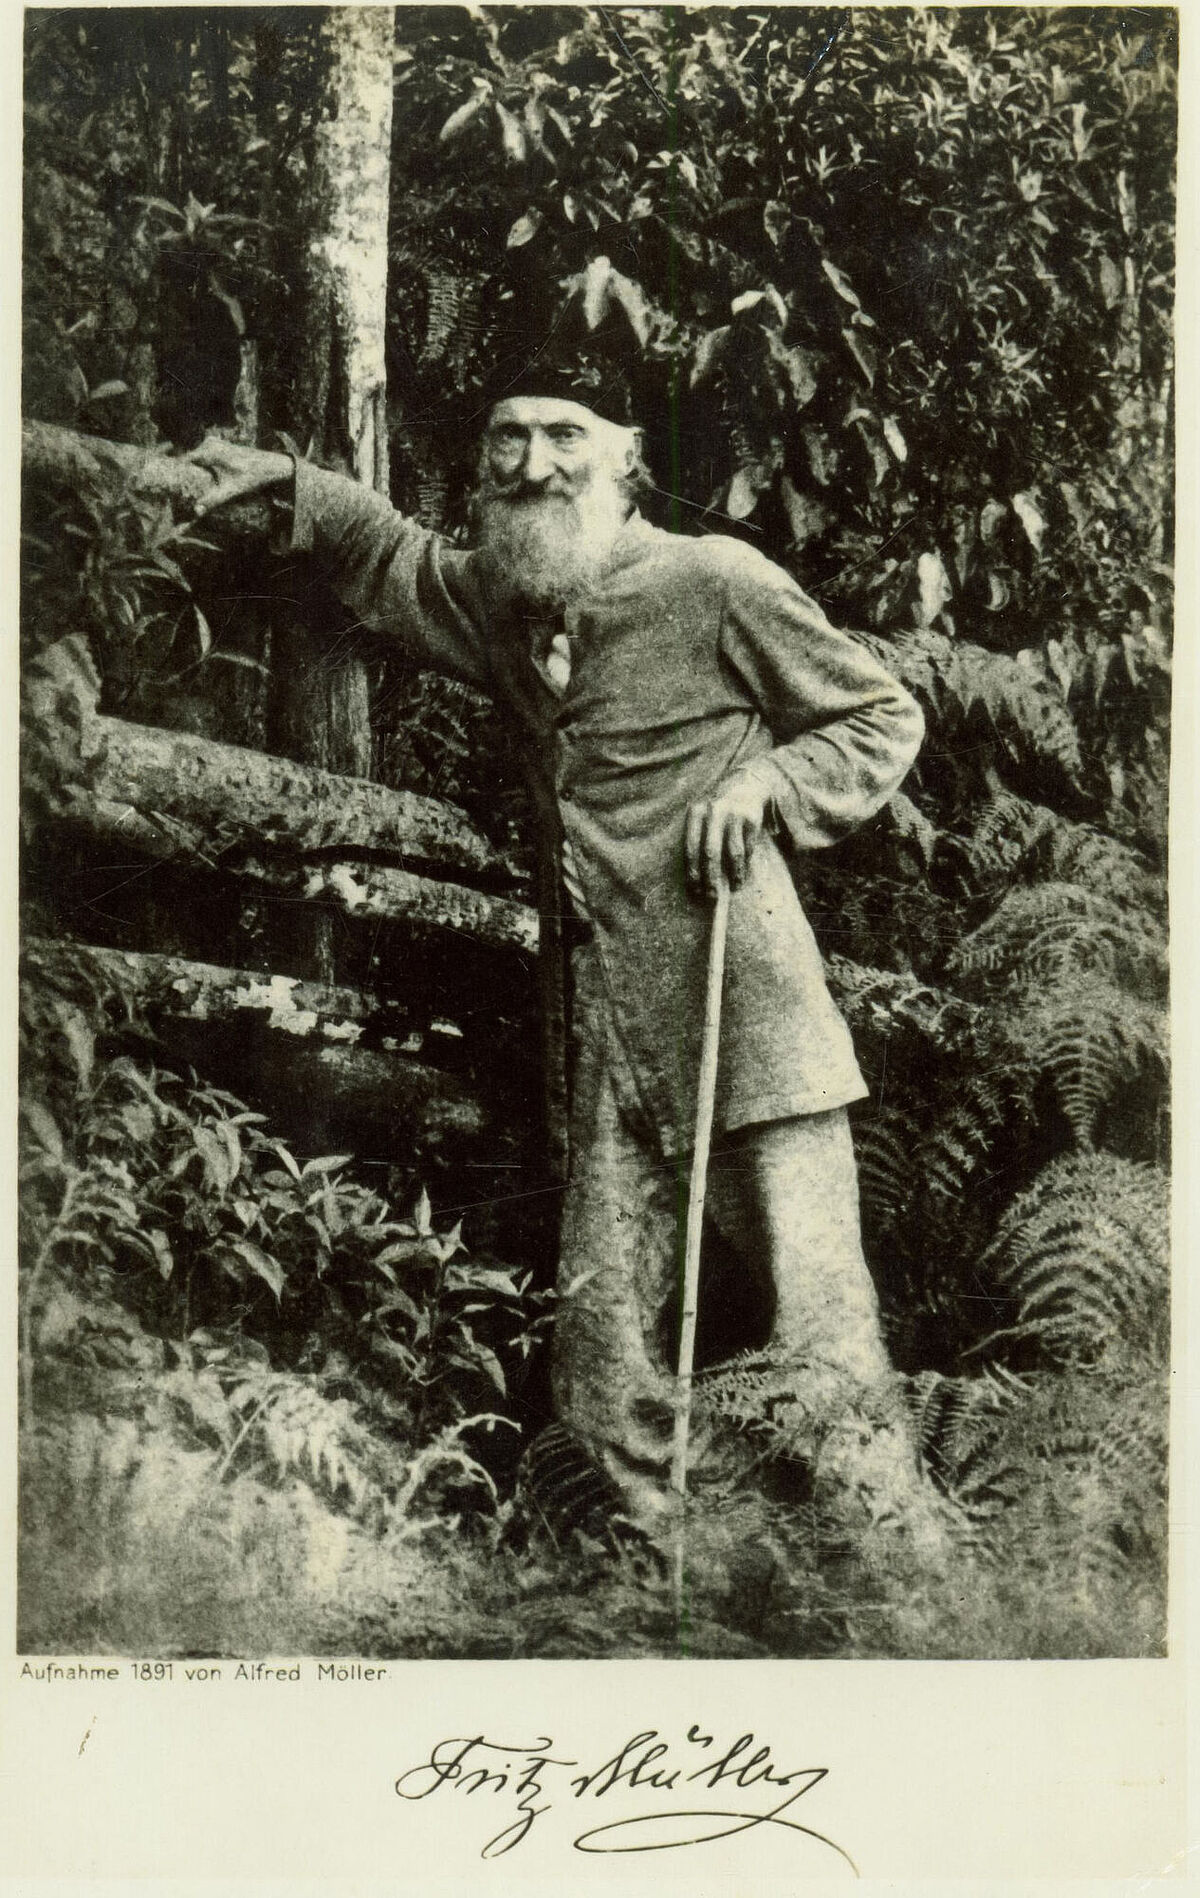 Auf einer historischen Postkarte ist Johann Friedrich Theodor (Fritz) Müller abgebildet. Er steht im brasilianischen Urwald.